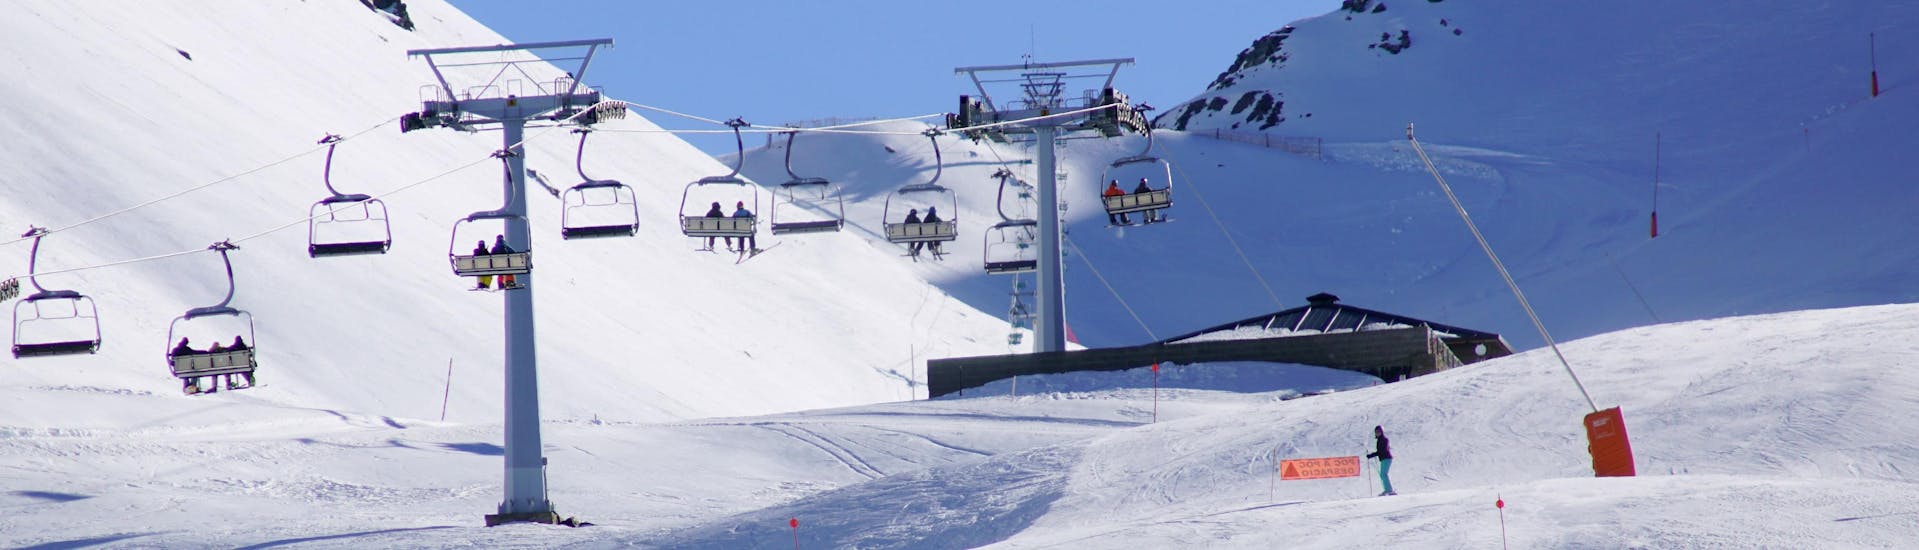 Una imagen de una de las pistas de esquí de la estación de esquí catalana de Boí Taüll, donde los visitantes pueden reservar clases de esquí con las escuelas de esquí locales.